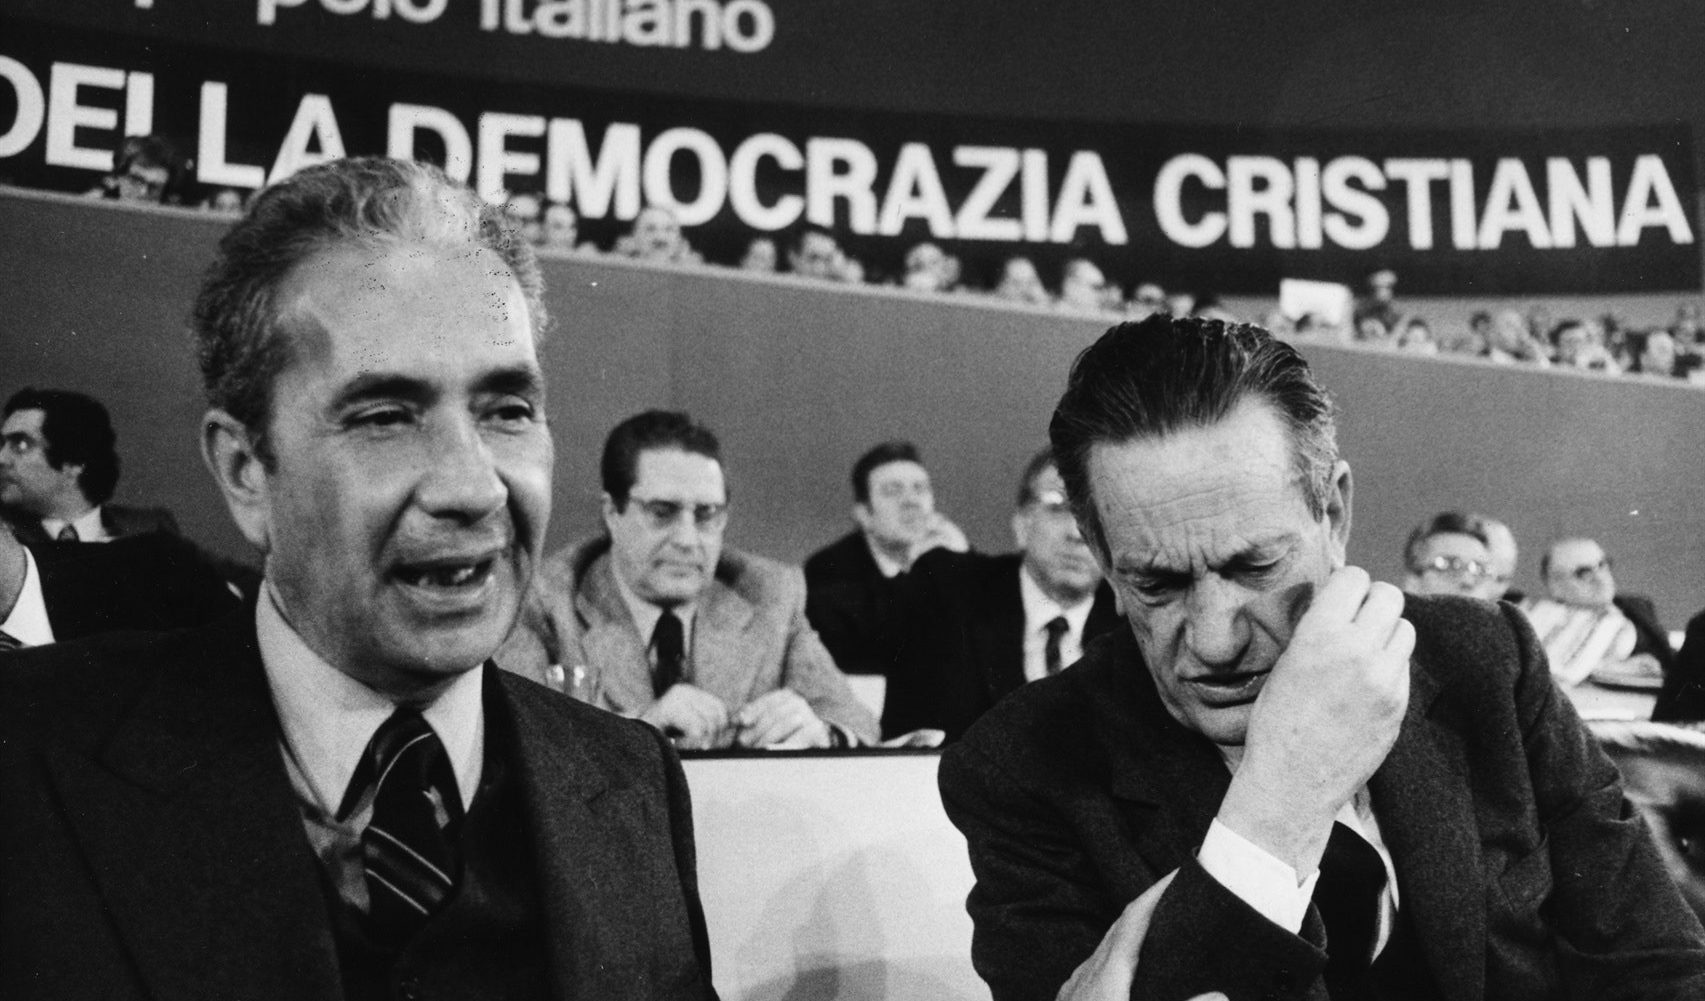 Ricordando Aldo Moro: spunti forse utili per affrontare costruttivamente la crisi